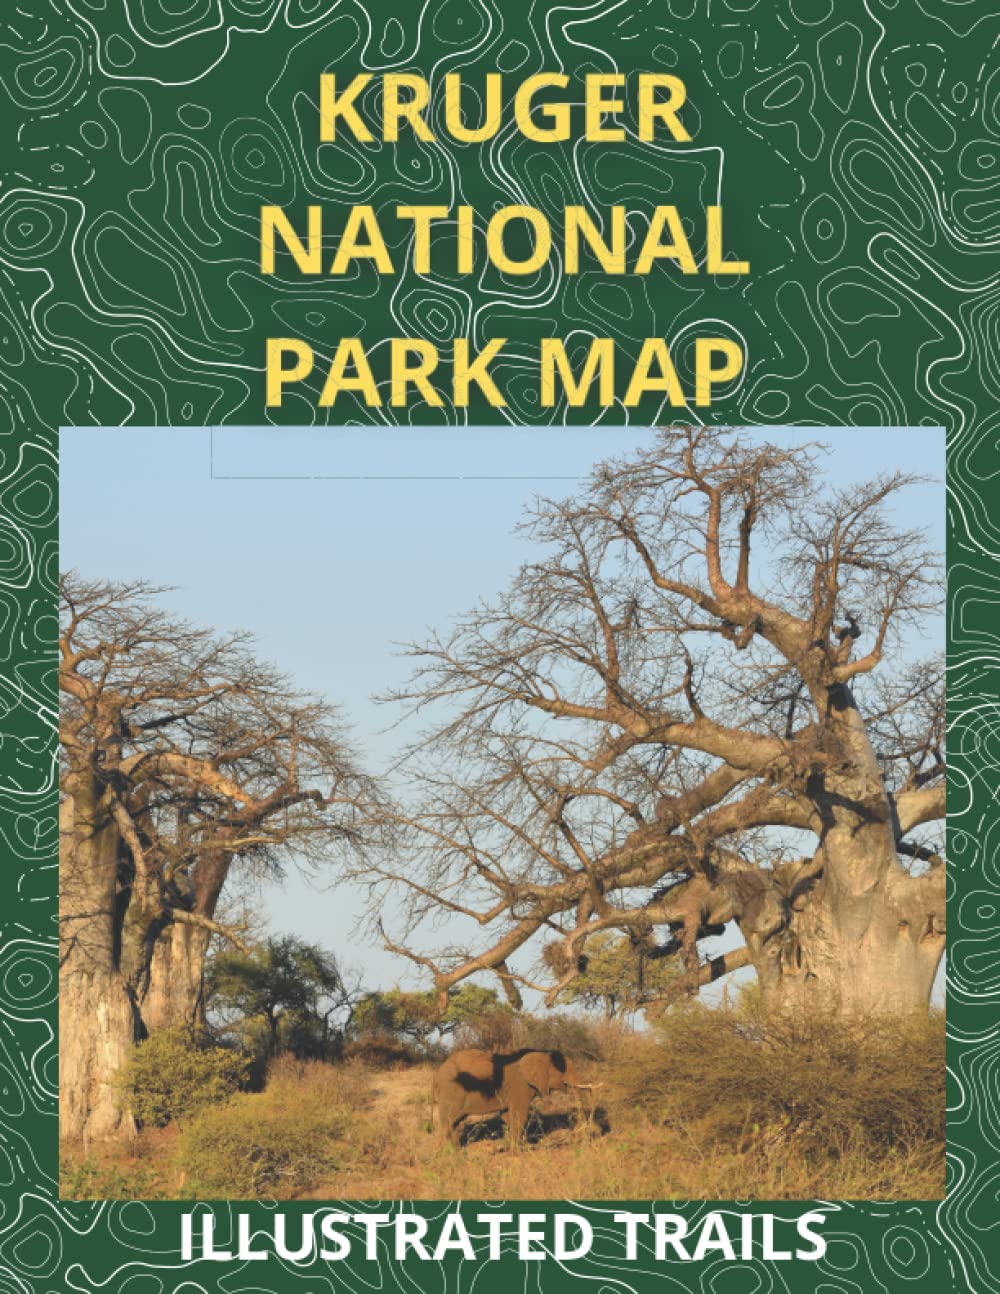 Kruger National Park Map  Illustrated Trails: Guide to Hiking and Exploring Kruger National Park     Paperback – 18 Aug. 2022